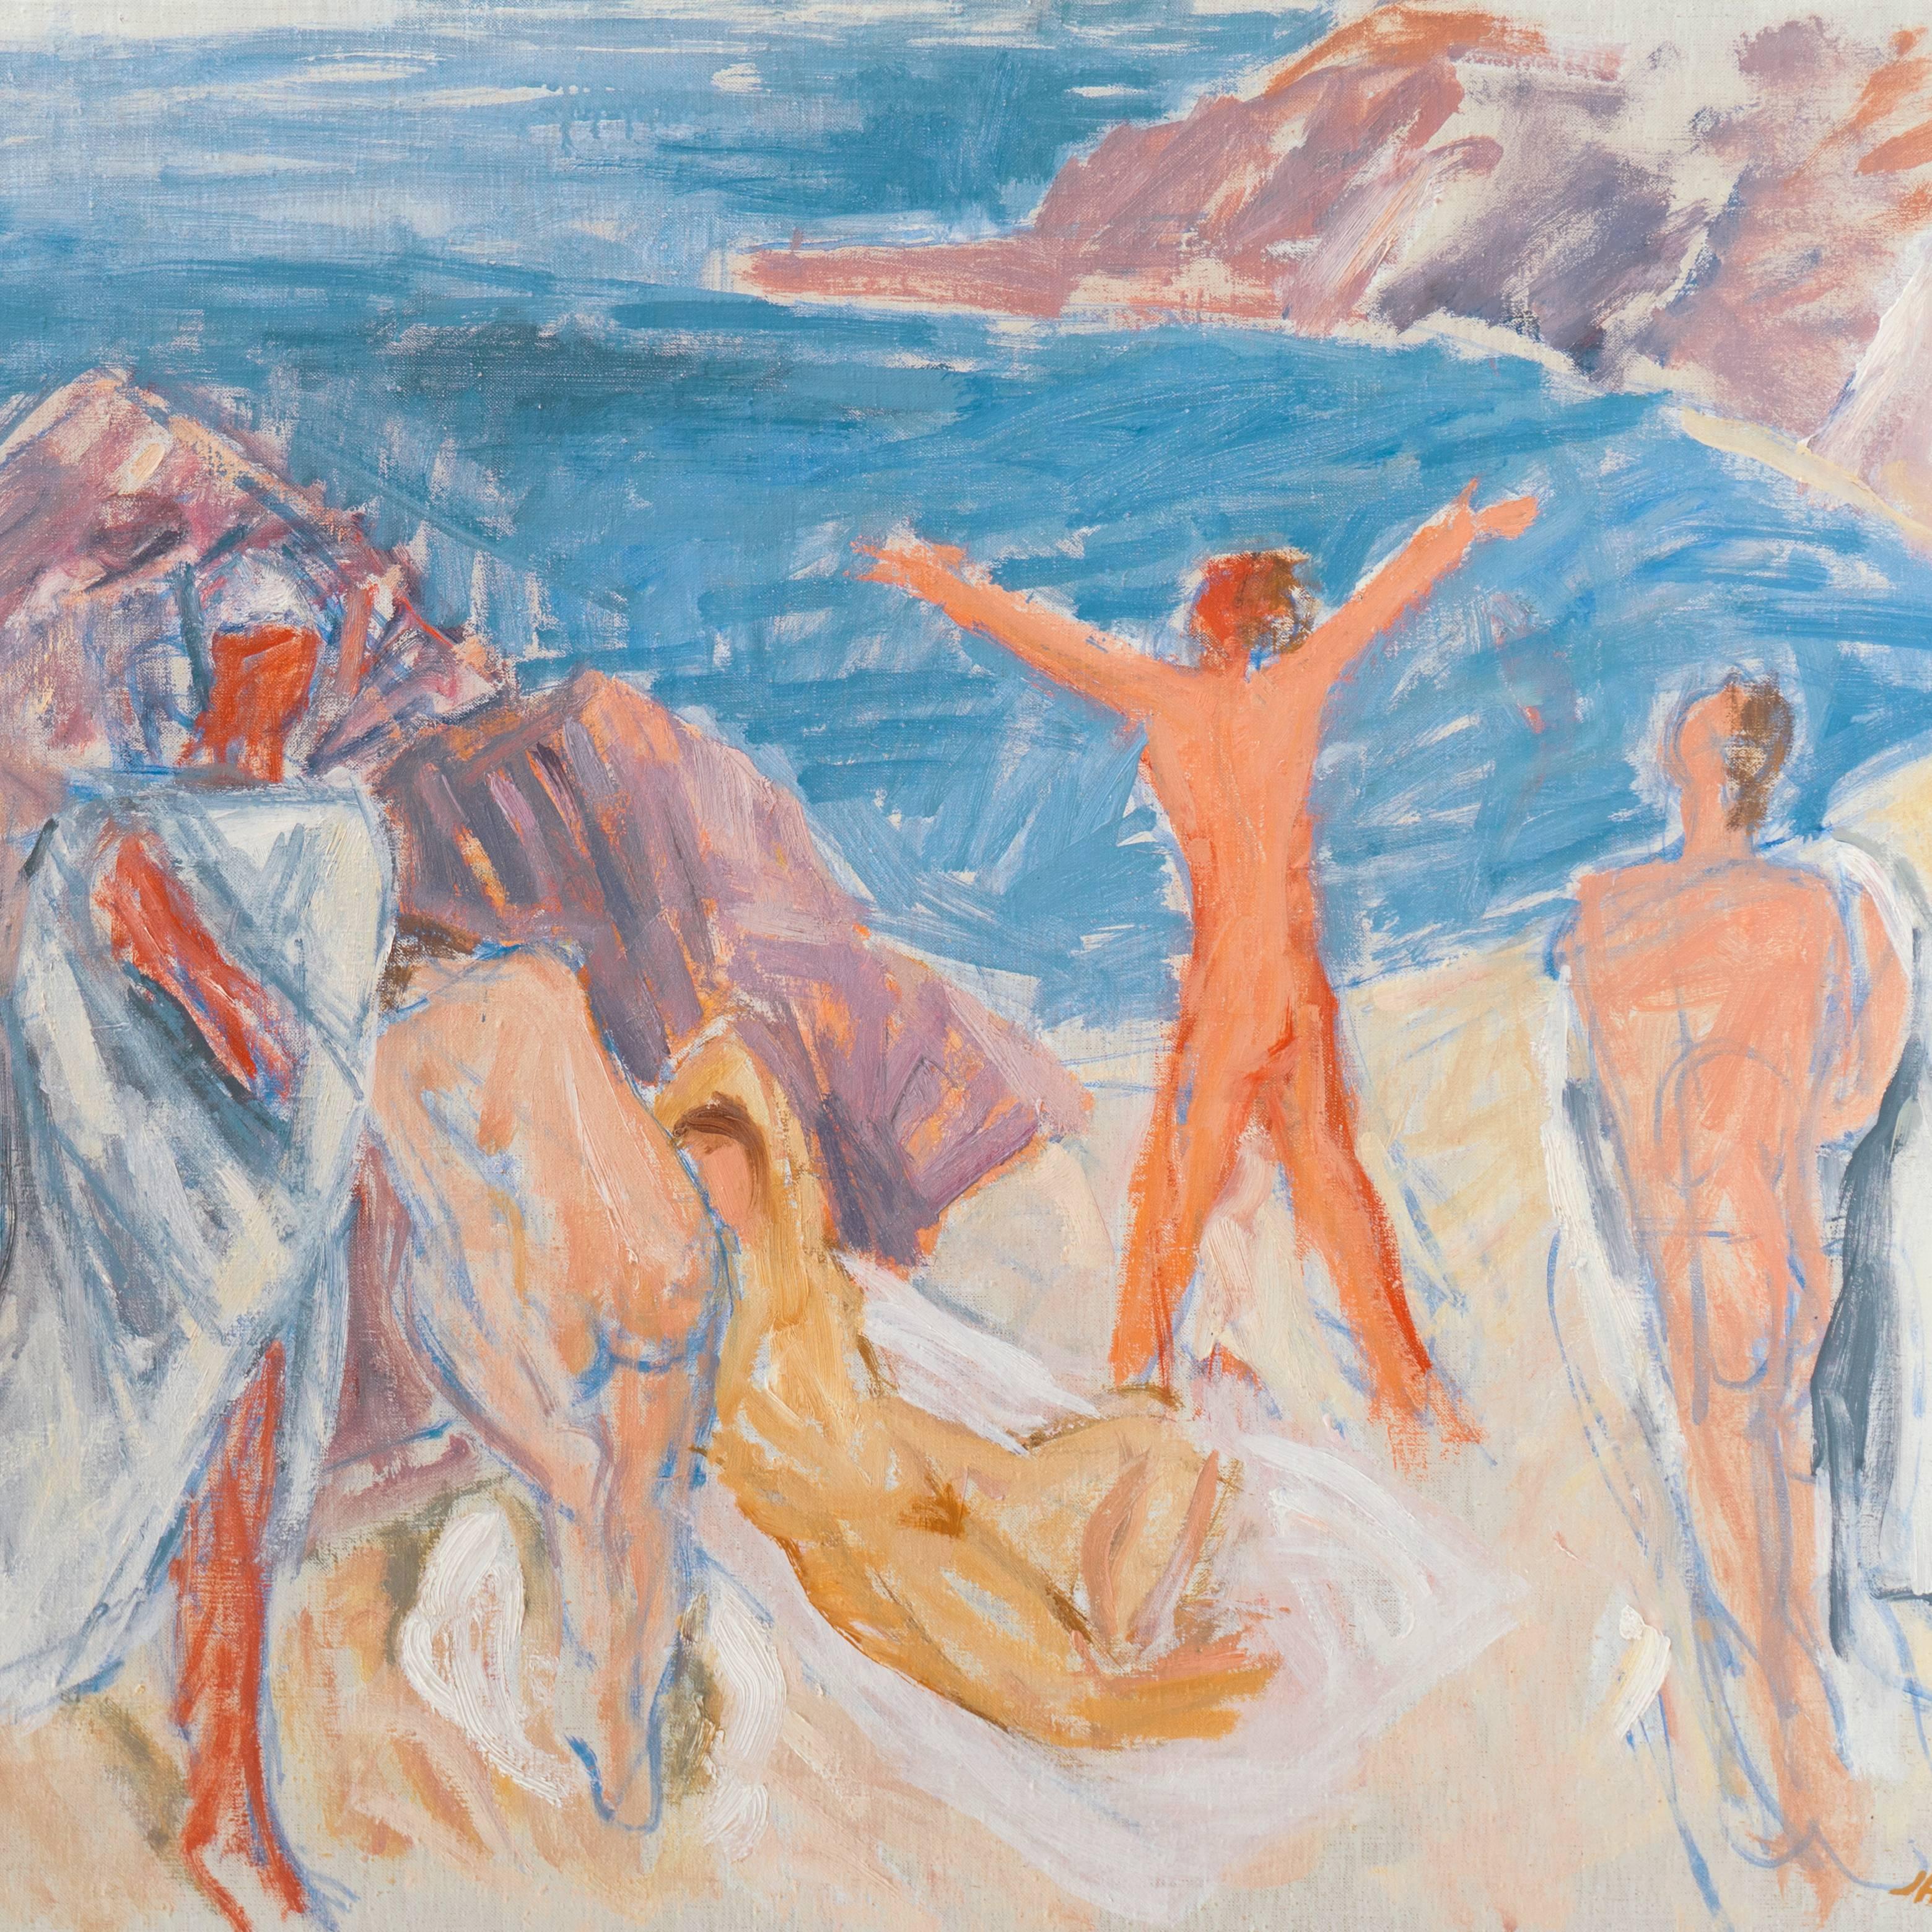  'Figures on a Beach', Large Post-Impressionist oil, Paris, Salon d’Automne - Gray Landscape Painting by Jais Nielsen